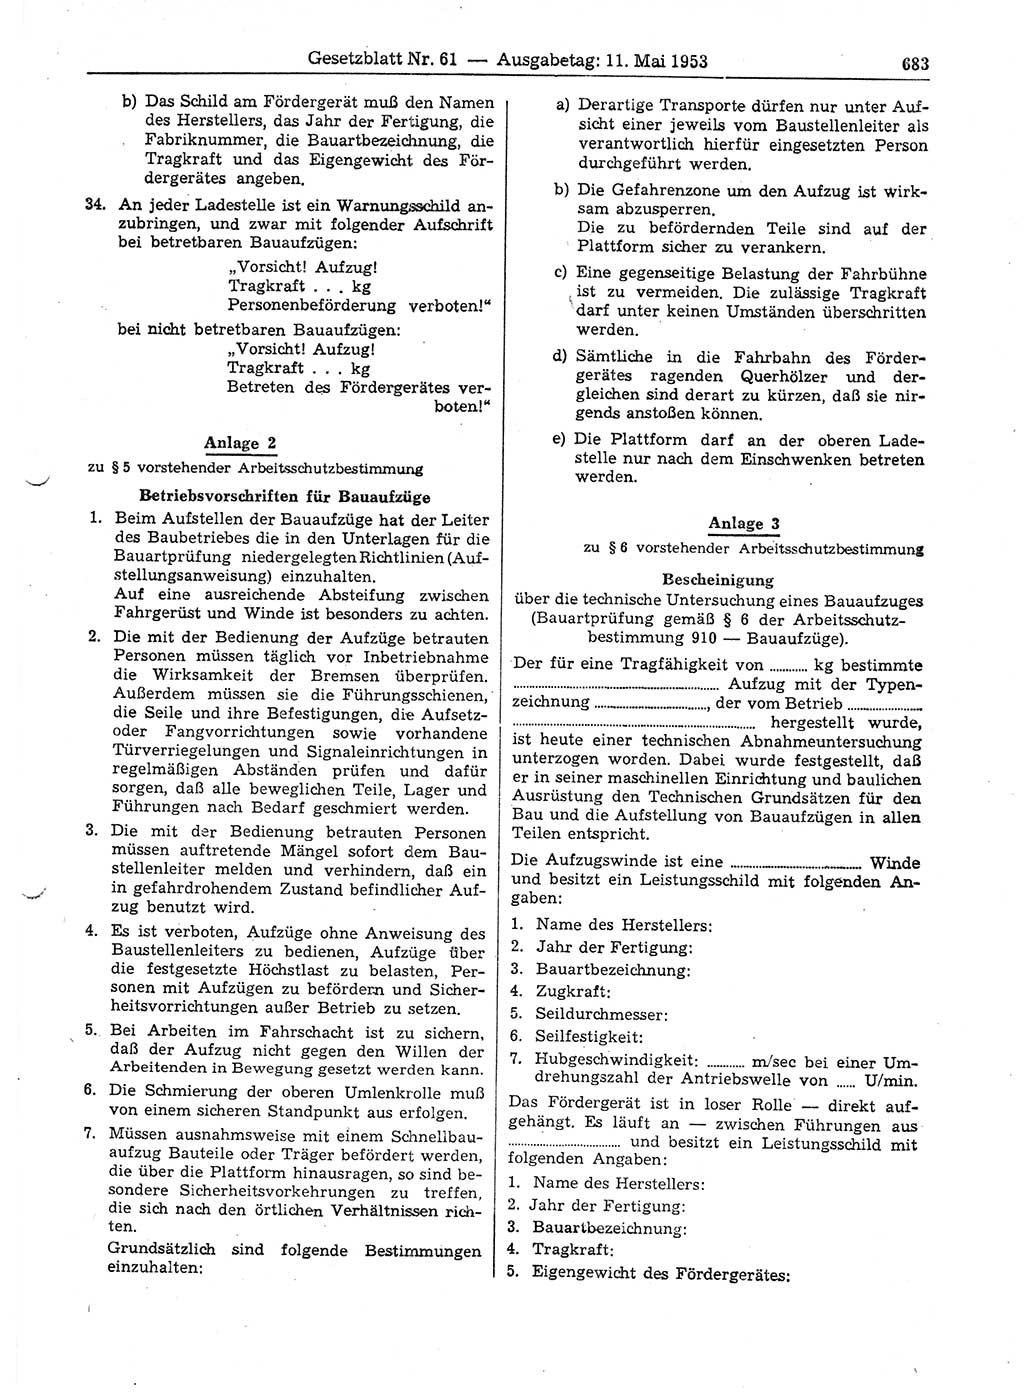 Gesetzblatt (GBl.) der Deutschen Demokratischen Republik (DDR) 1953, Seite 683 (GBl. DDR 1953, S. 683)